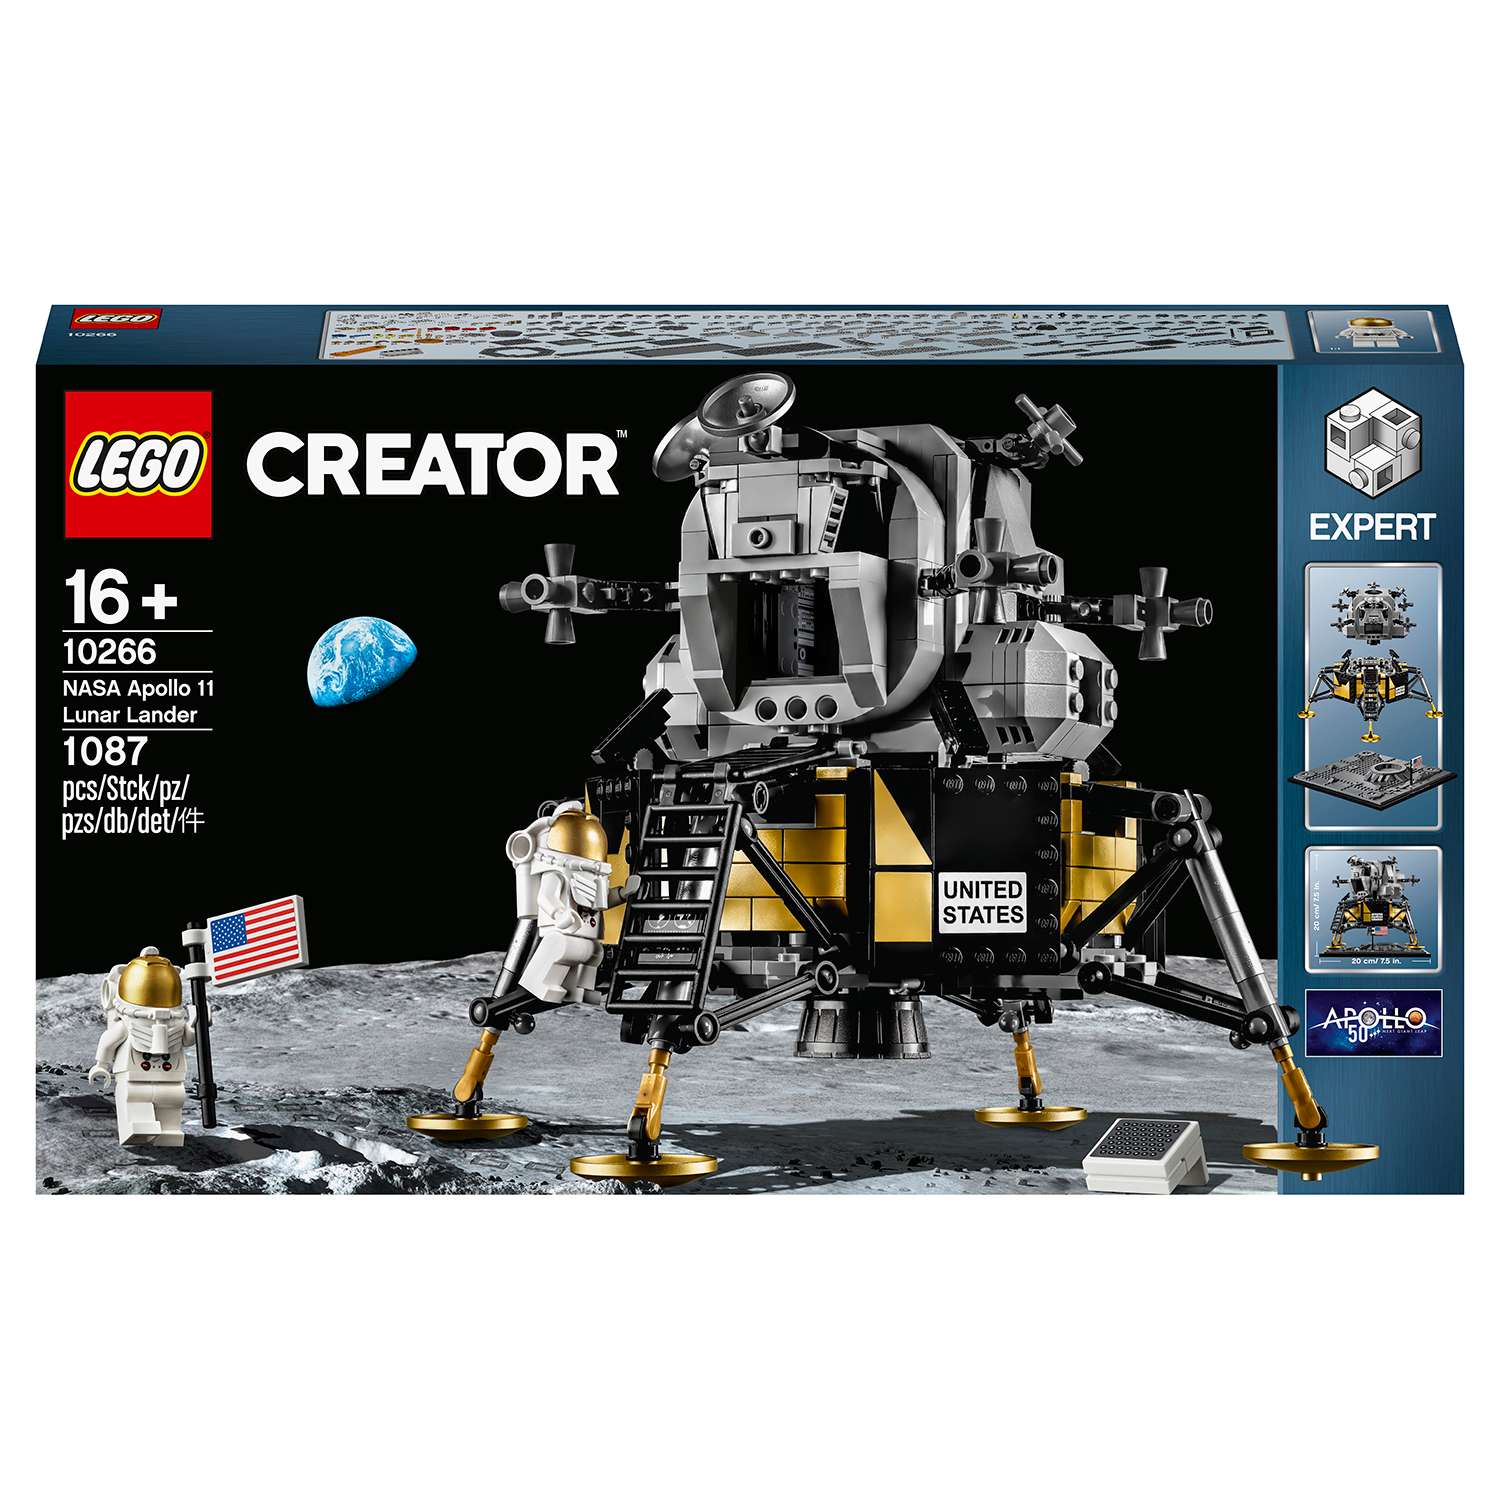 Конструктор LEGO Creator Expert Лунный модуль корабля Апполон 11 НАСА 10266 - фото 2